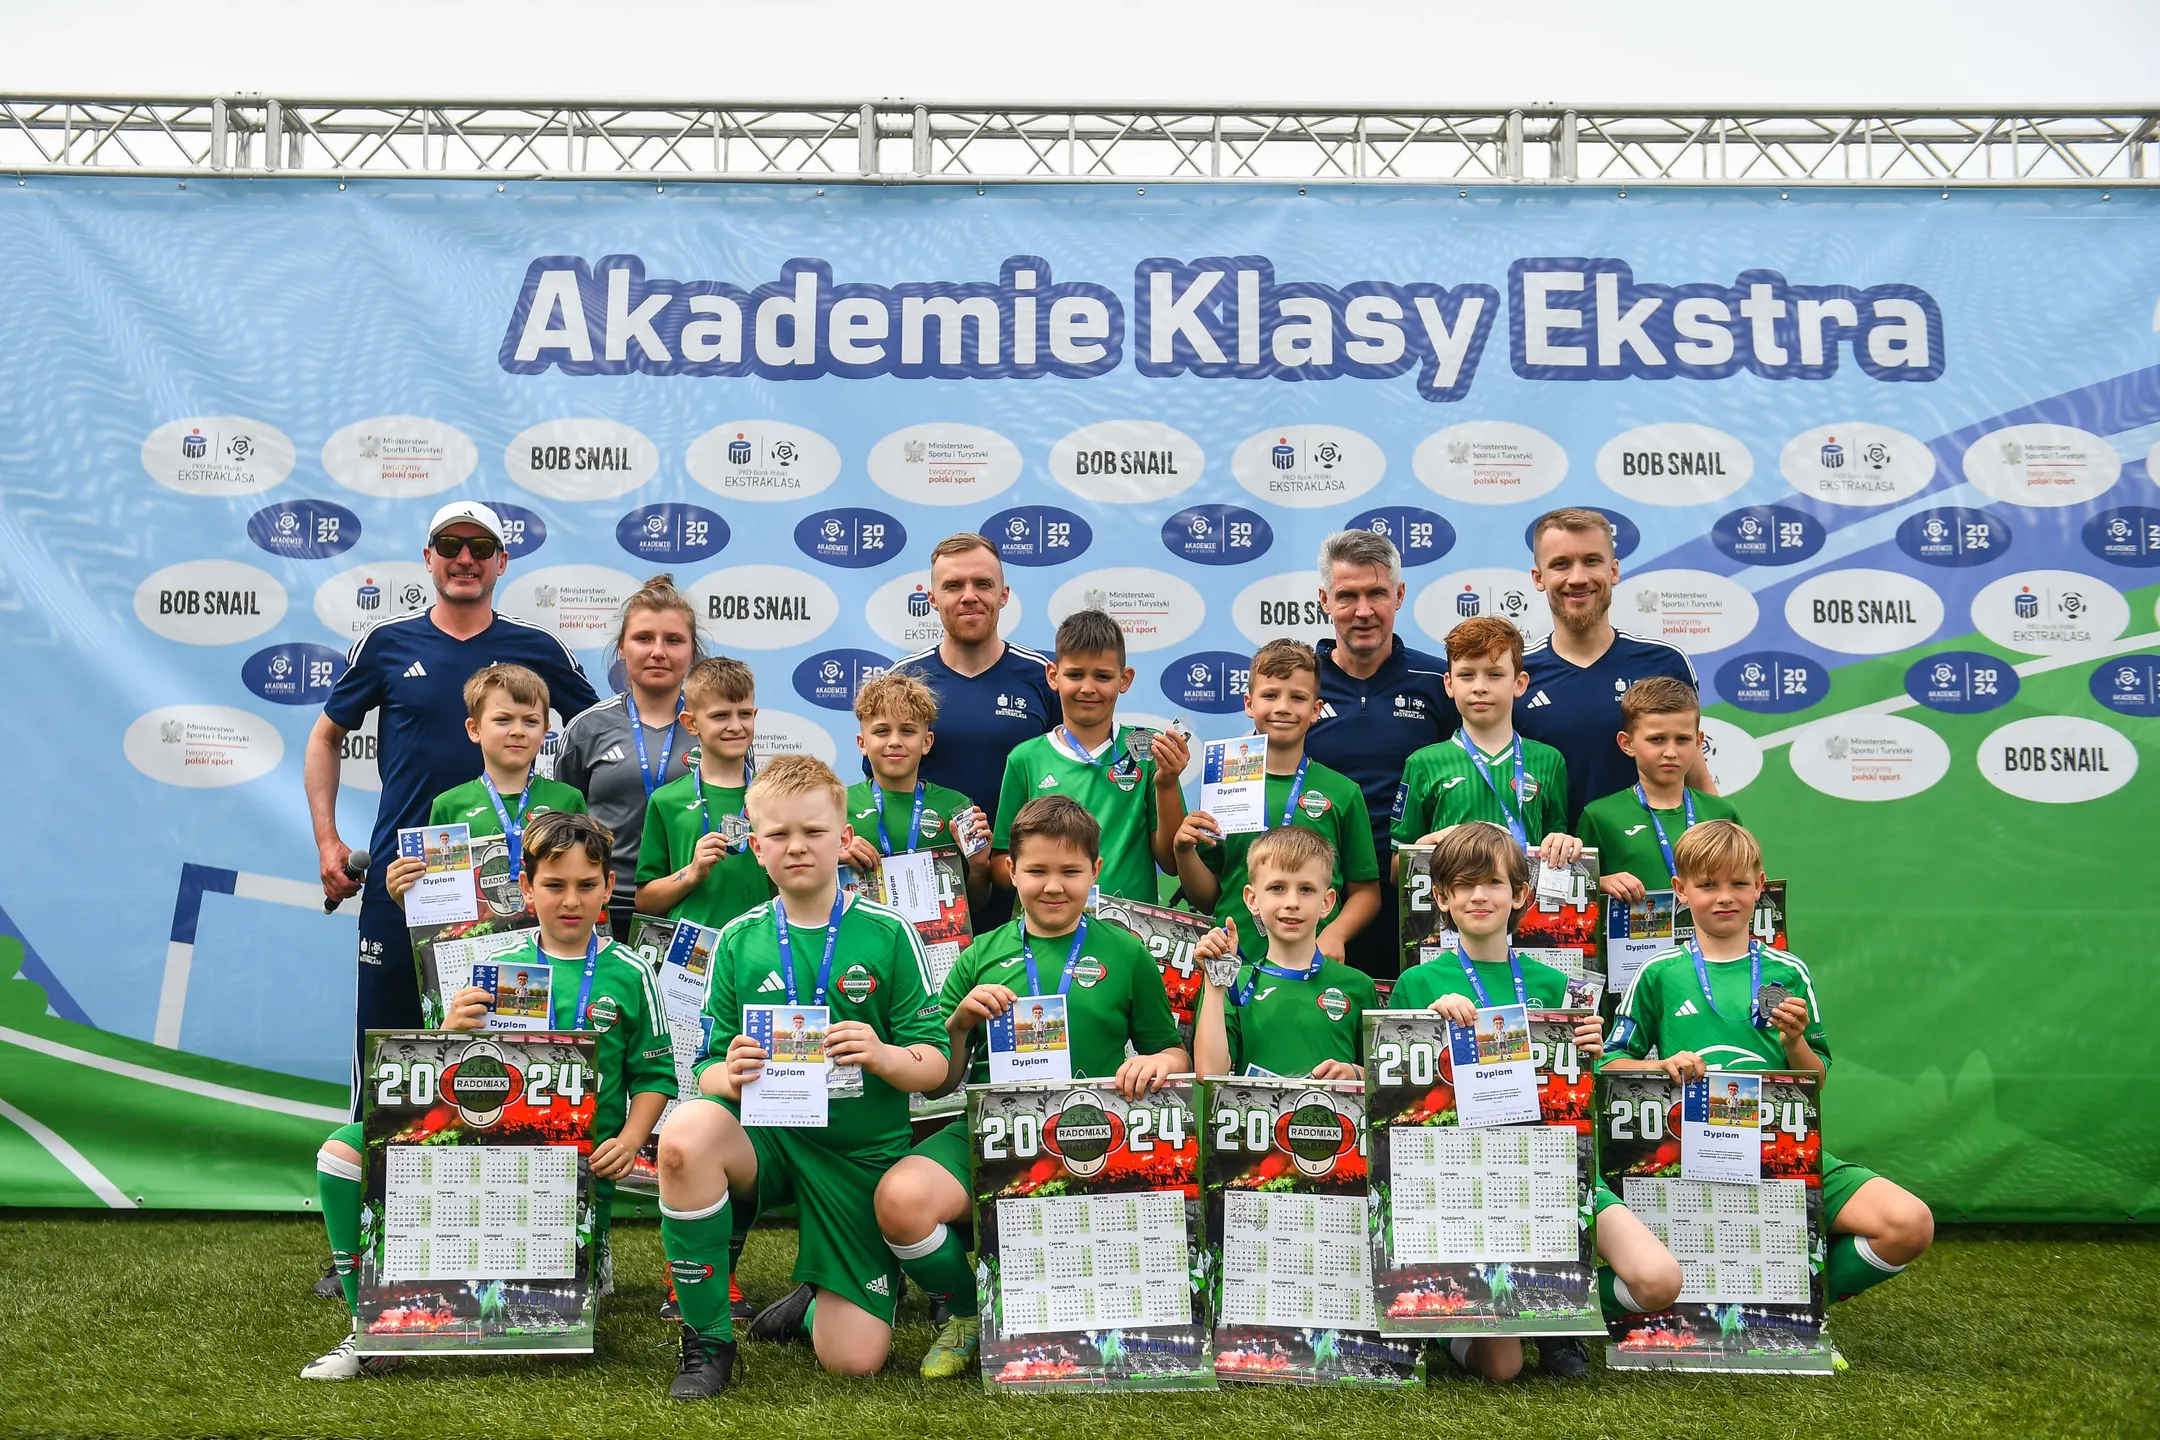 Ruszyły Akademie Klasy Ekstra! Wspieramy rozwój piłkarskich talentów 